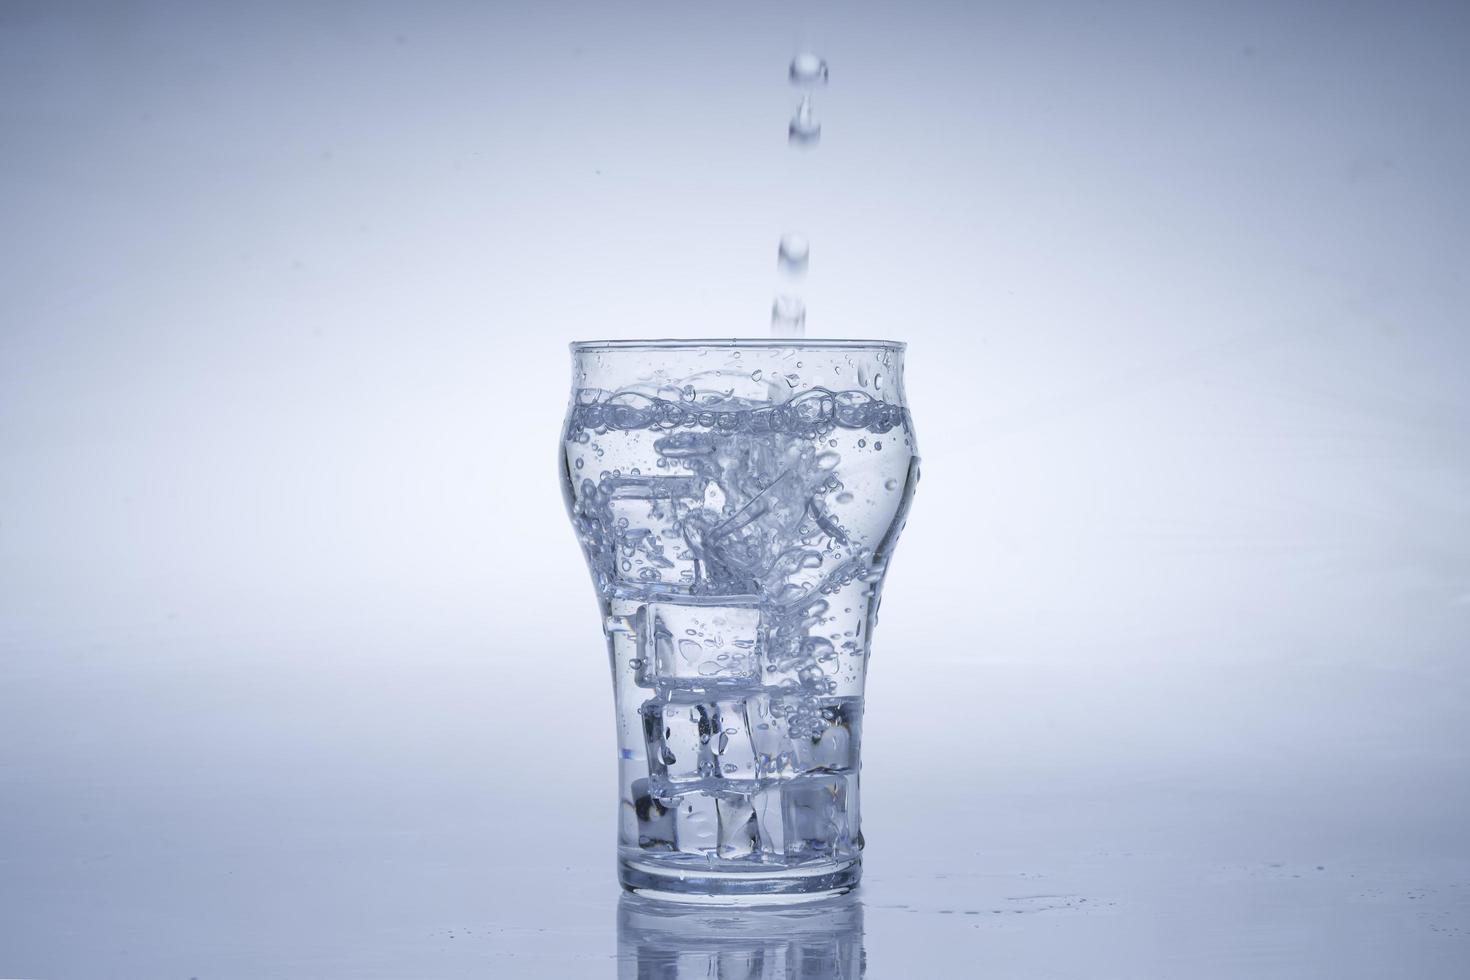 Eiswürfel fiel in das Wasserglas. Wasser spritzte aus dem klaren Glas. frisches Konzept foto